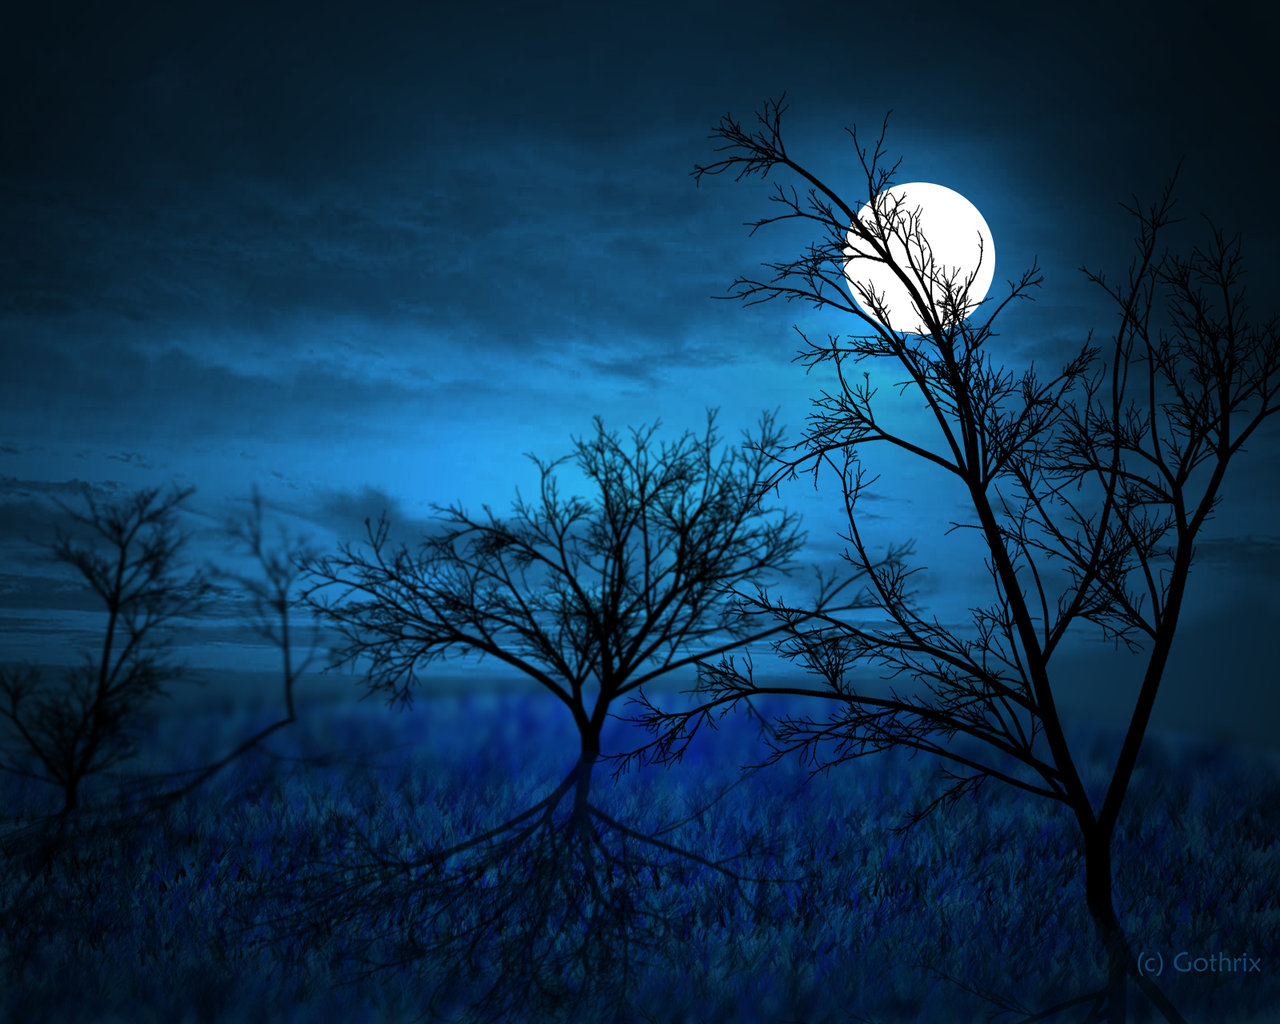 full_moon_____midnight_forest_by_gothrix.jpg